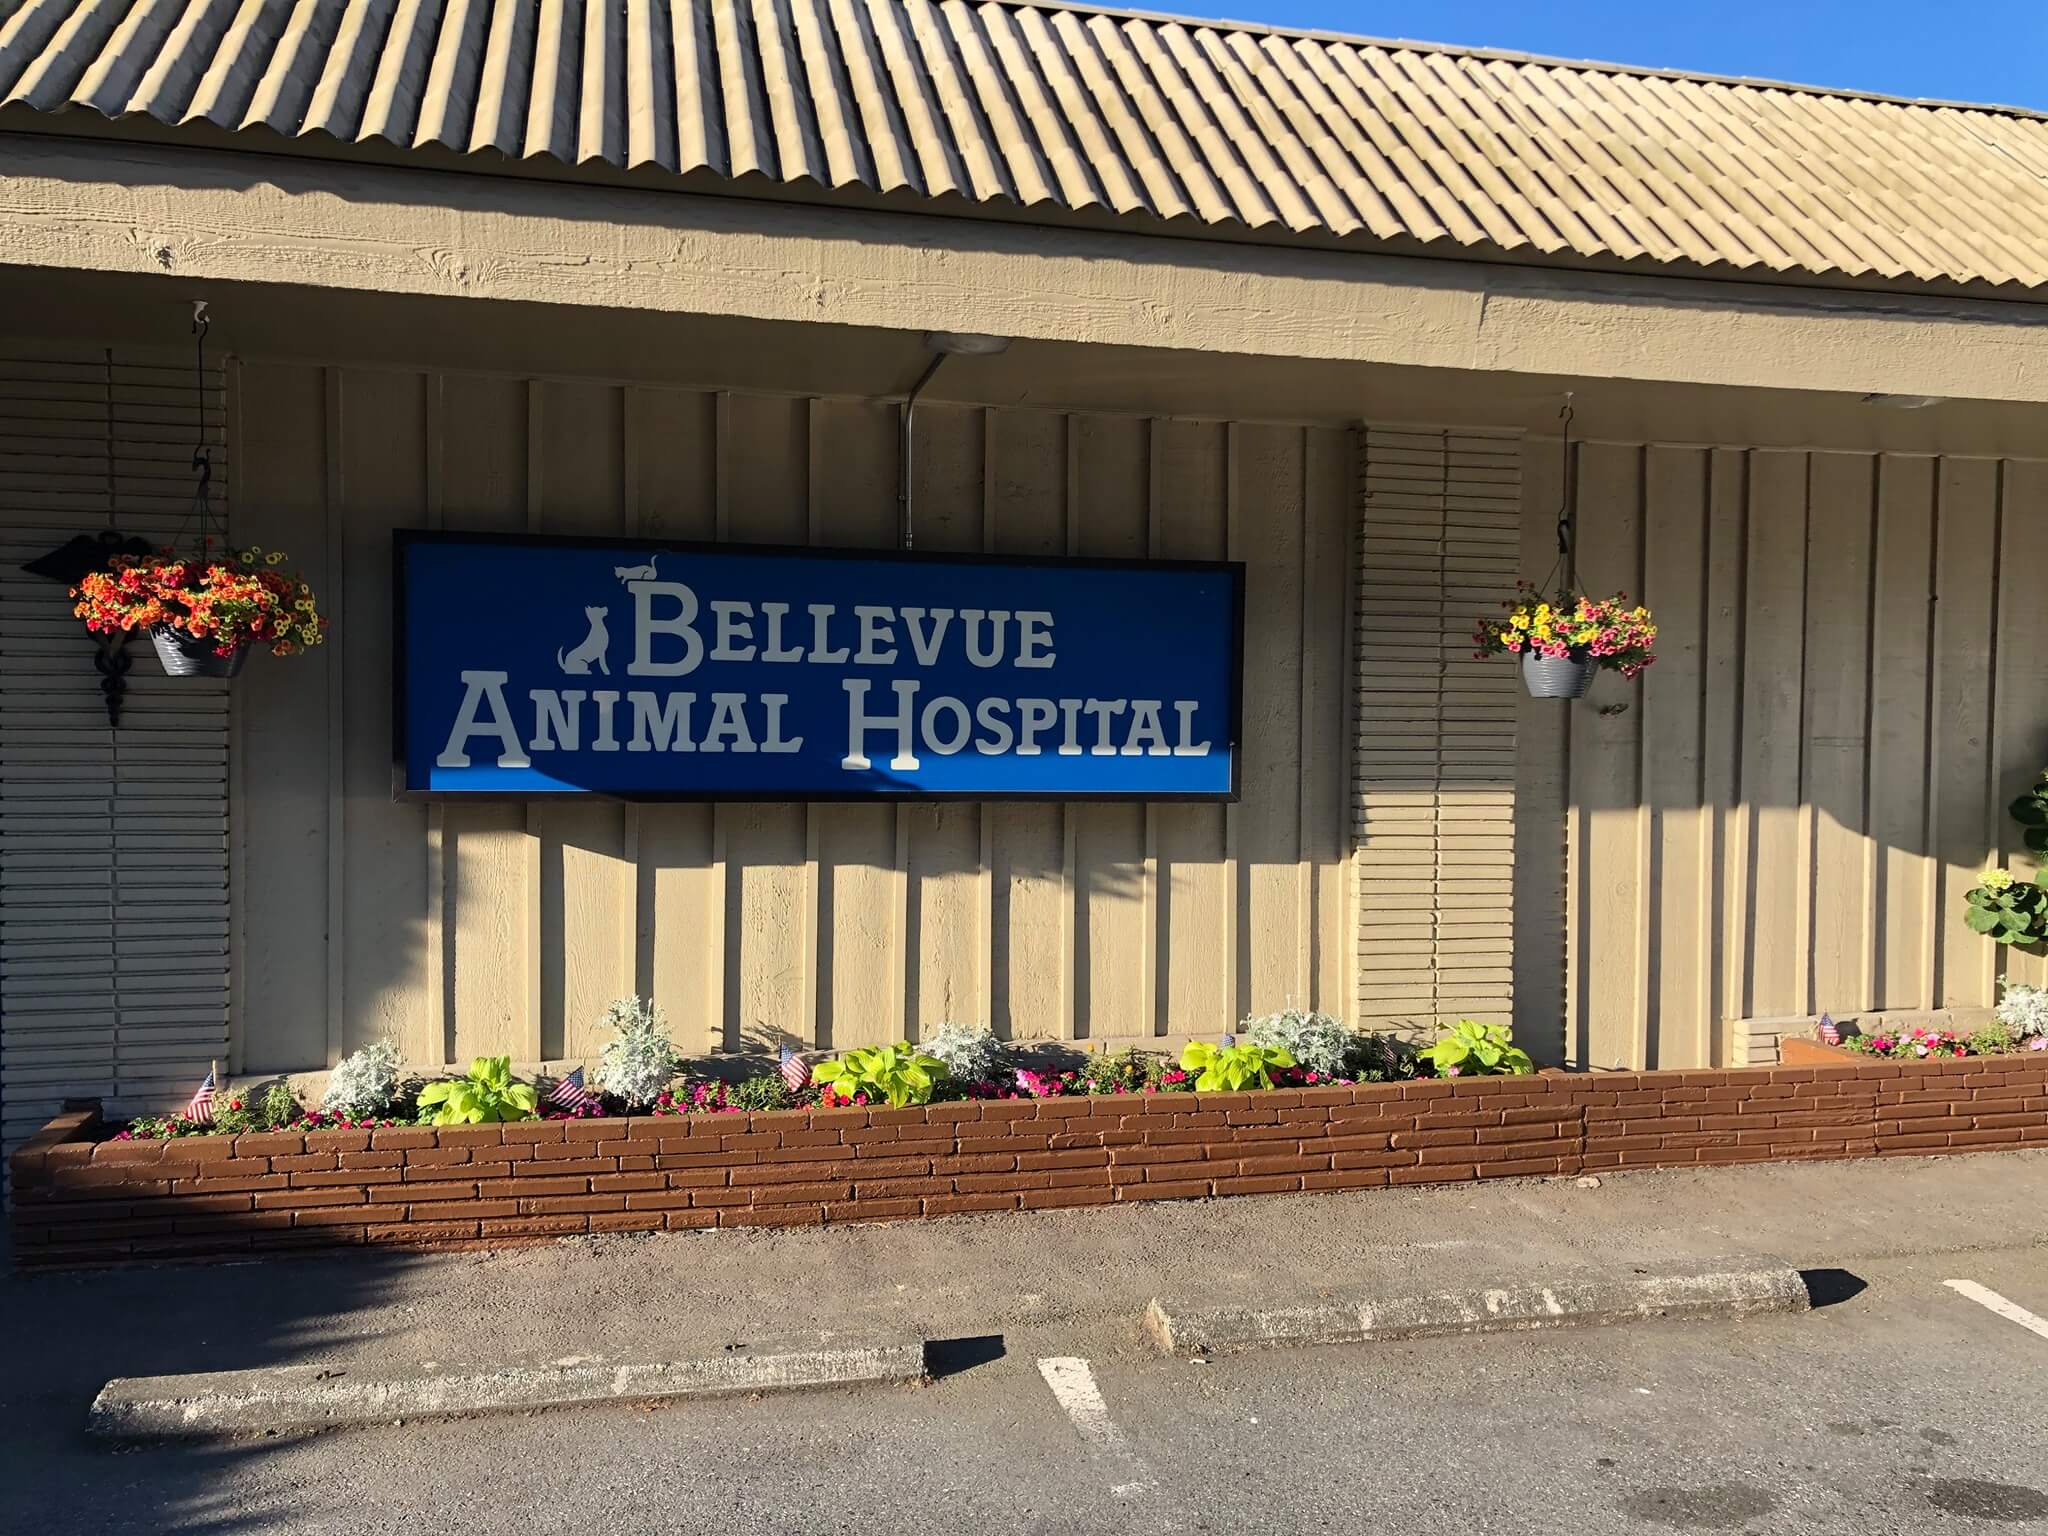 Bellevue Animal Hospital sign